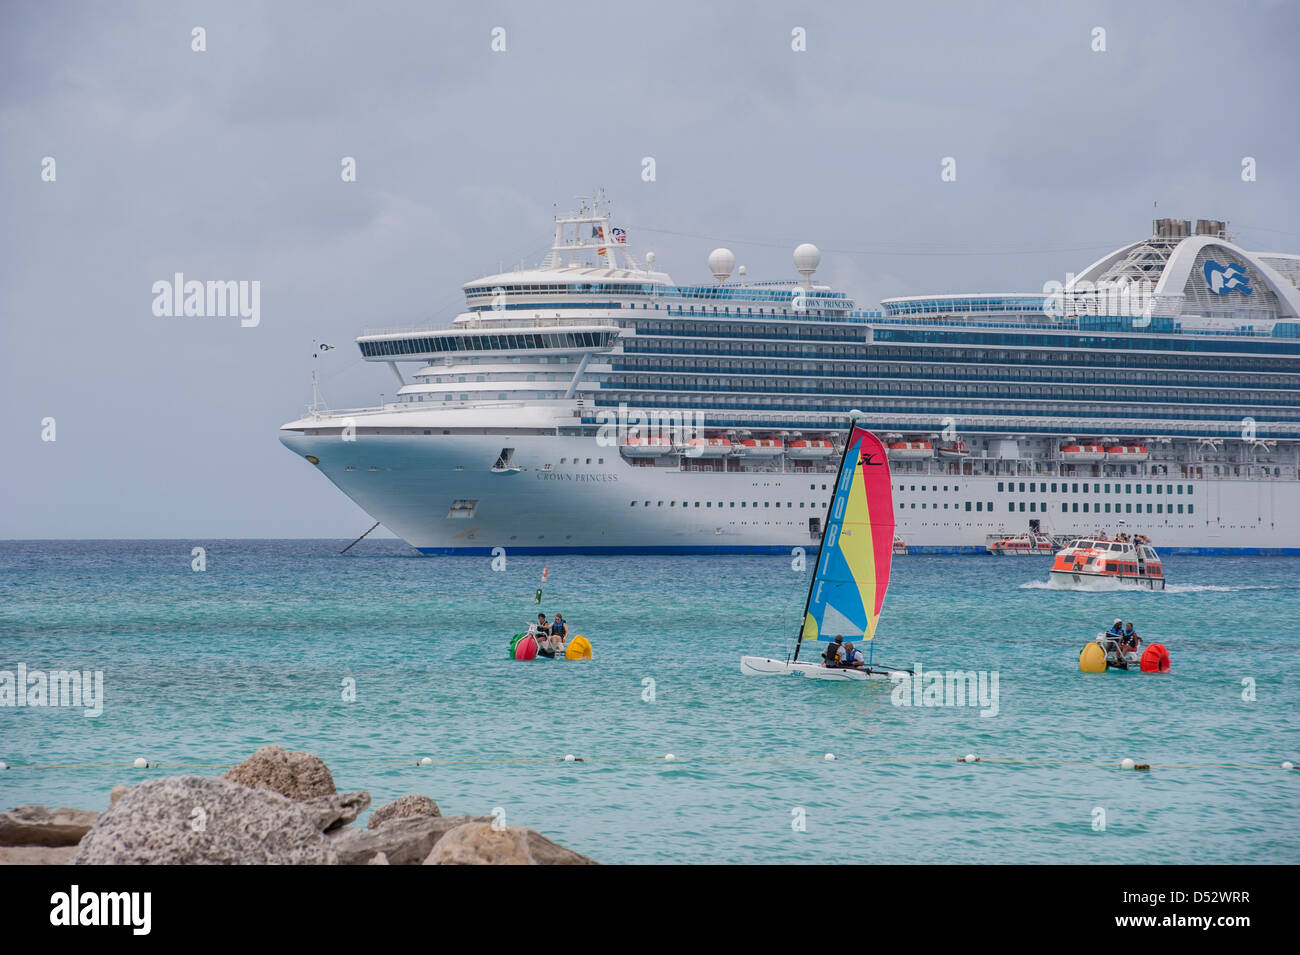 Bahamas, Eleuthera, Princess Cays, Crown Princess, nave da crociera, Hobie cat, barca a vela, Aqua bike, bando di gara Foto Stock